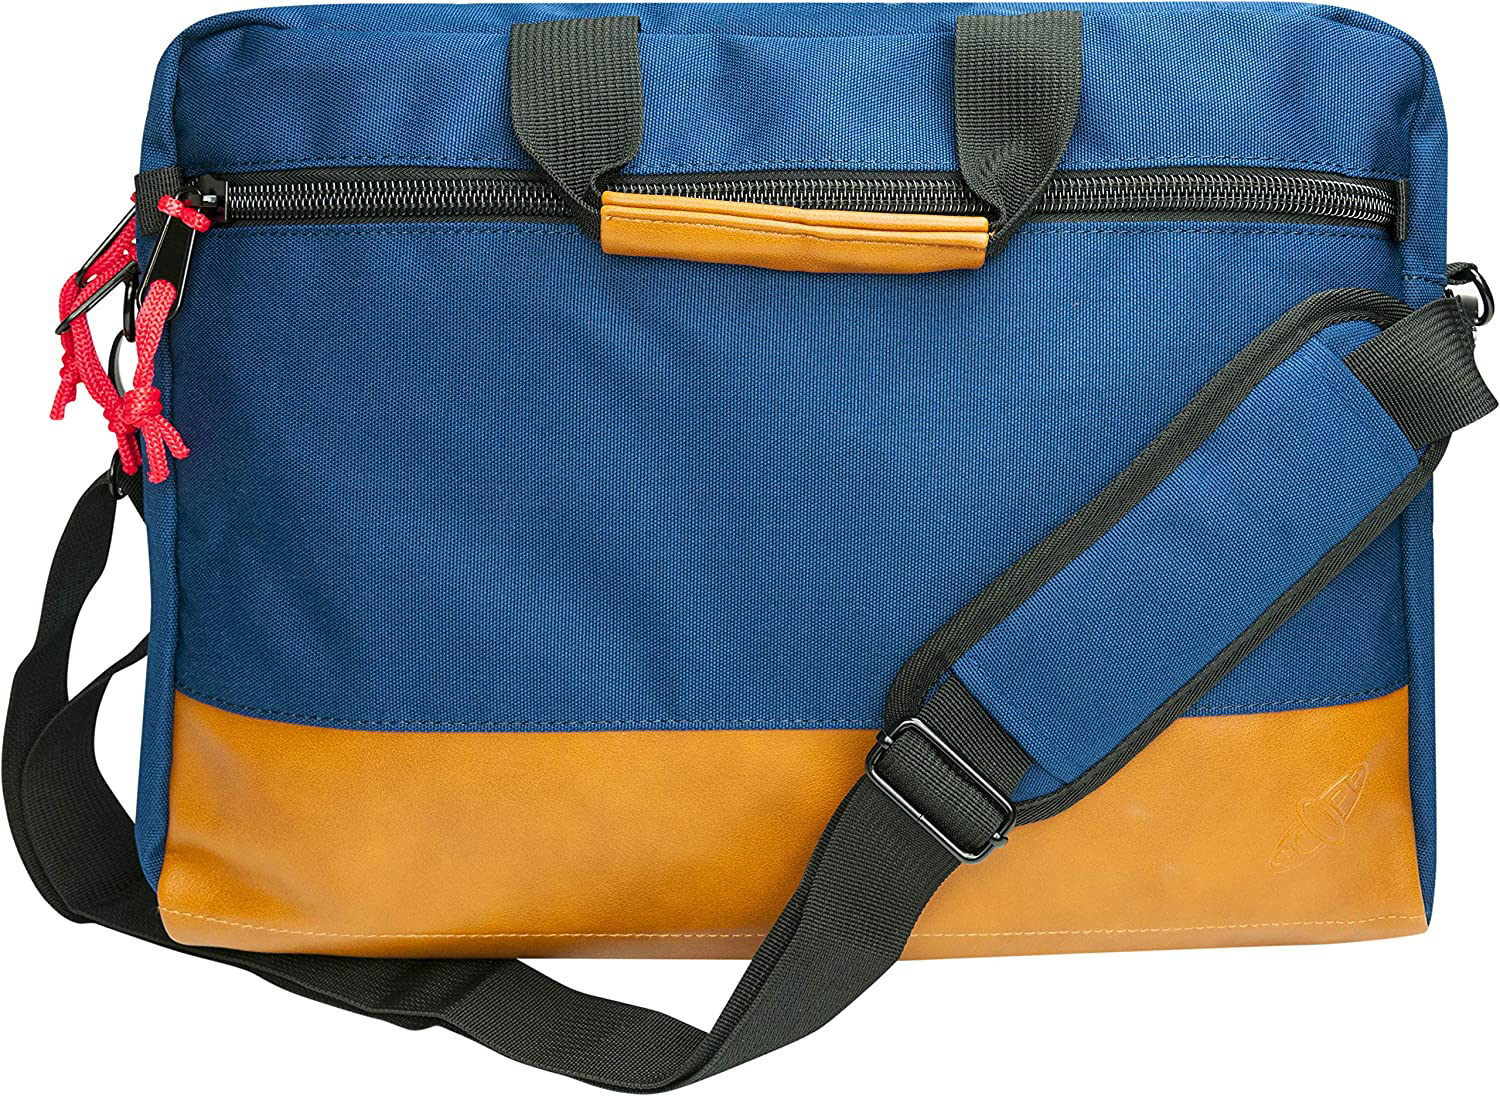 SCOPE -715767- Notebook Tasche Rucksack blau/braun Aktentasche / Universal für Polyester / Kunstleder